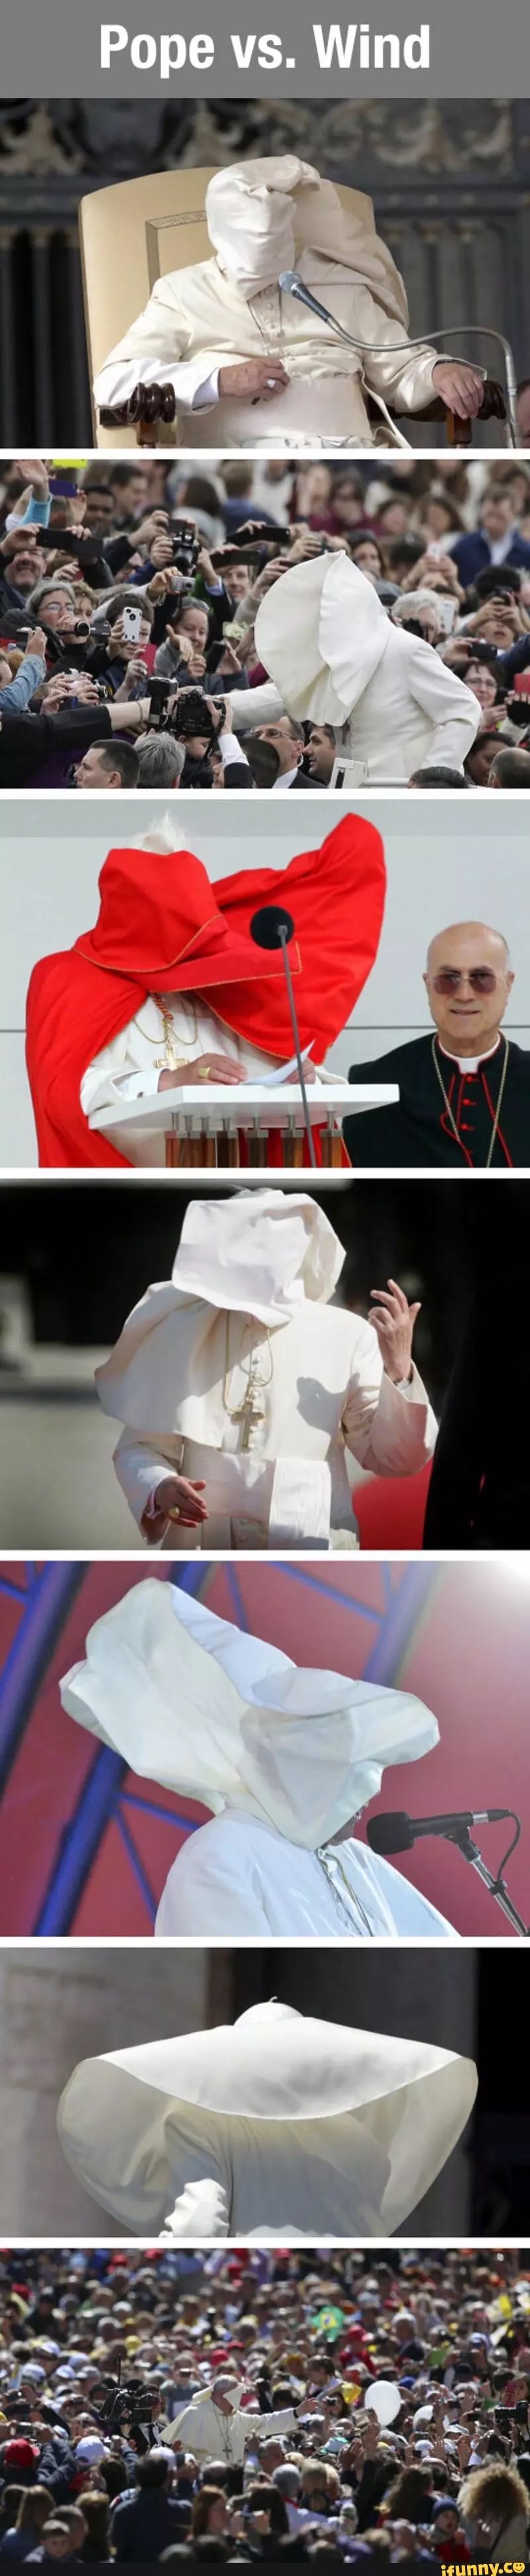 Pope VS wind meme